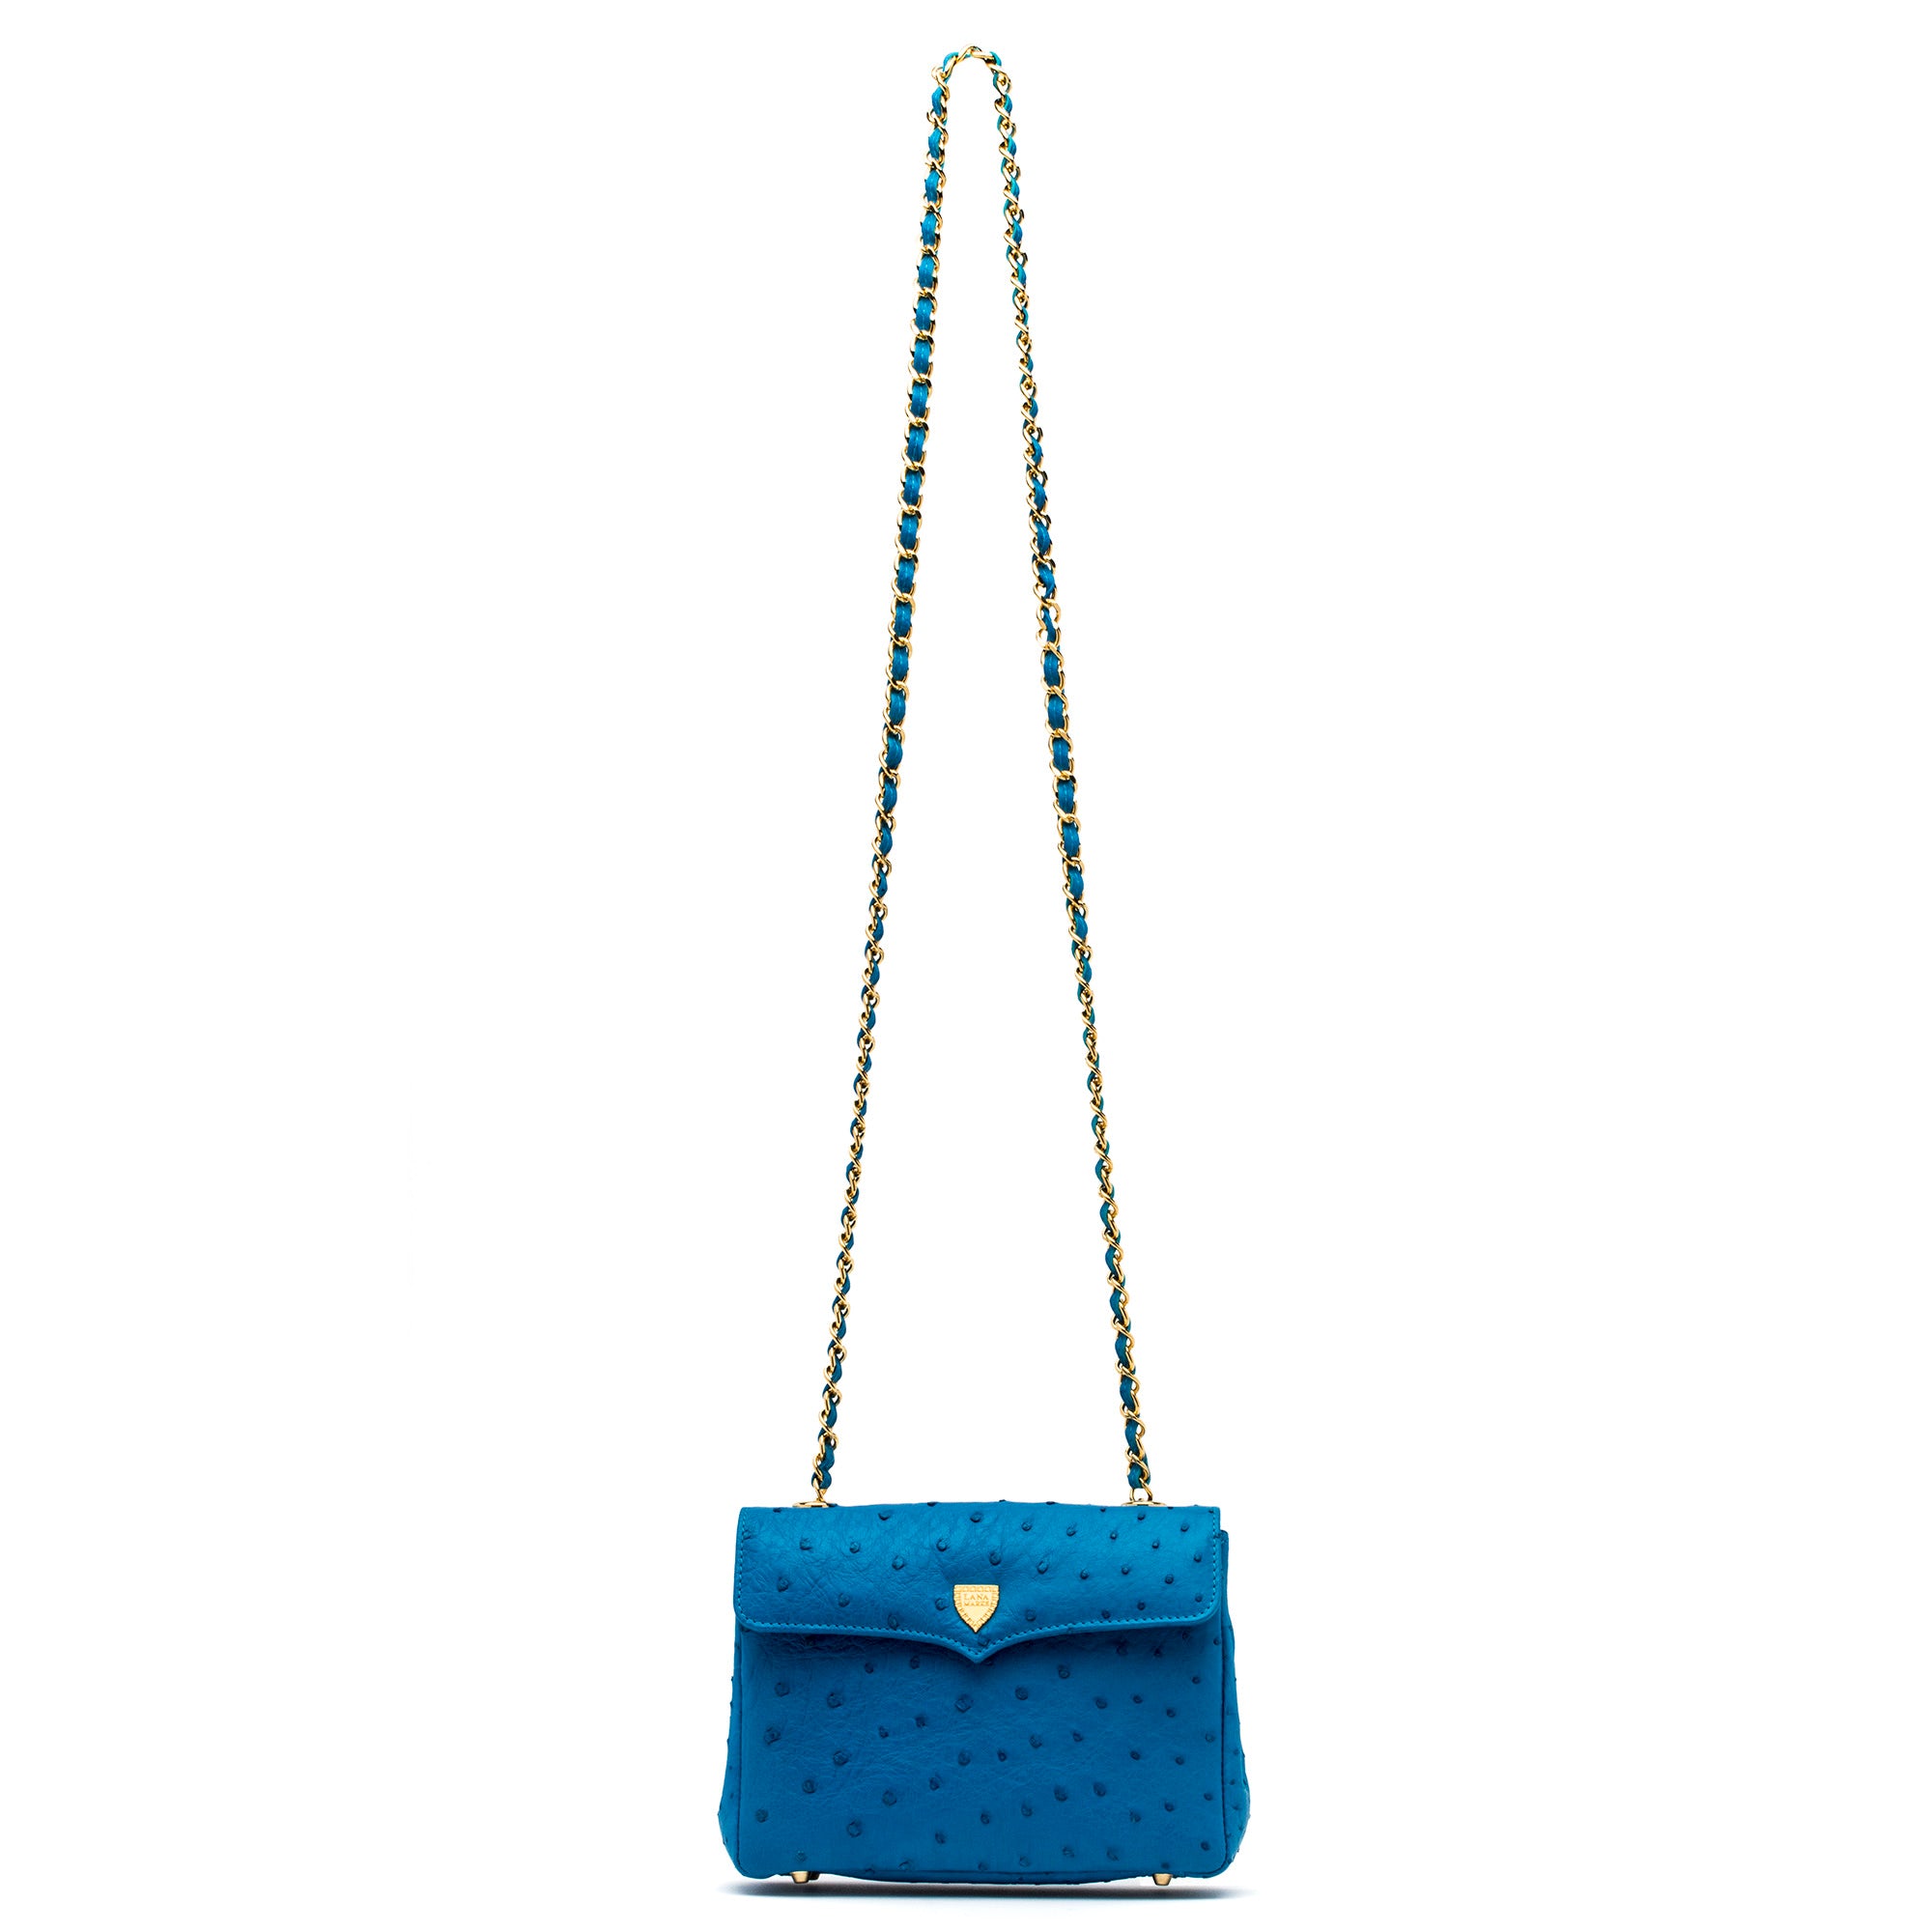 Medium Chain Bag in Blue Ostrich